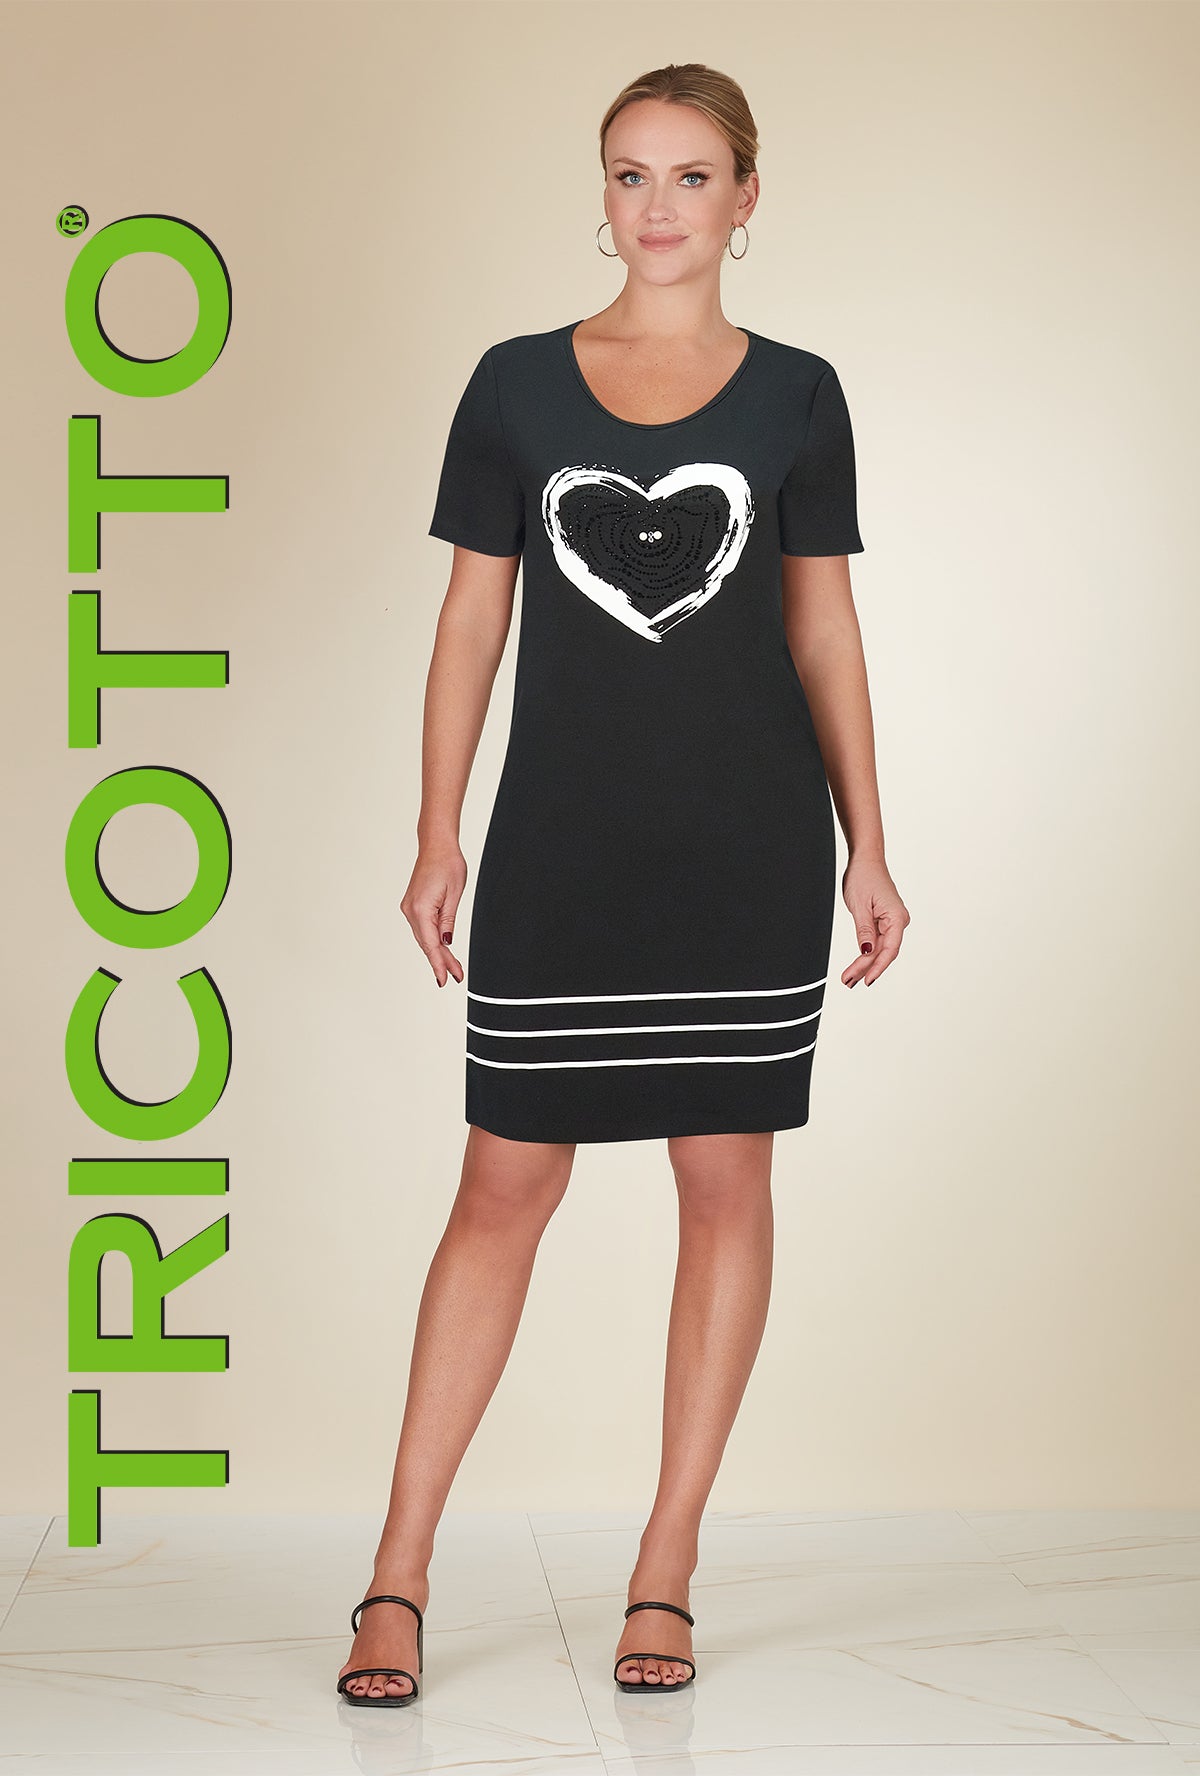 Tricotto Black-white Heart Print Dress